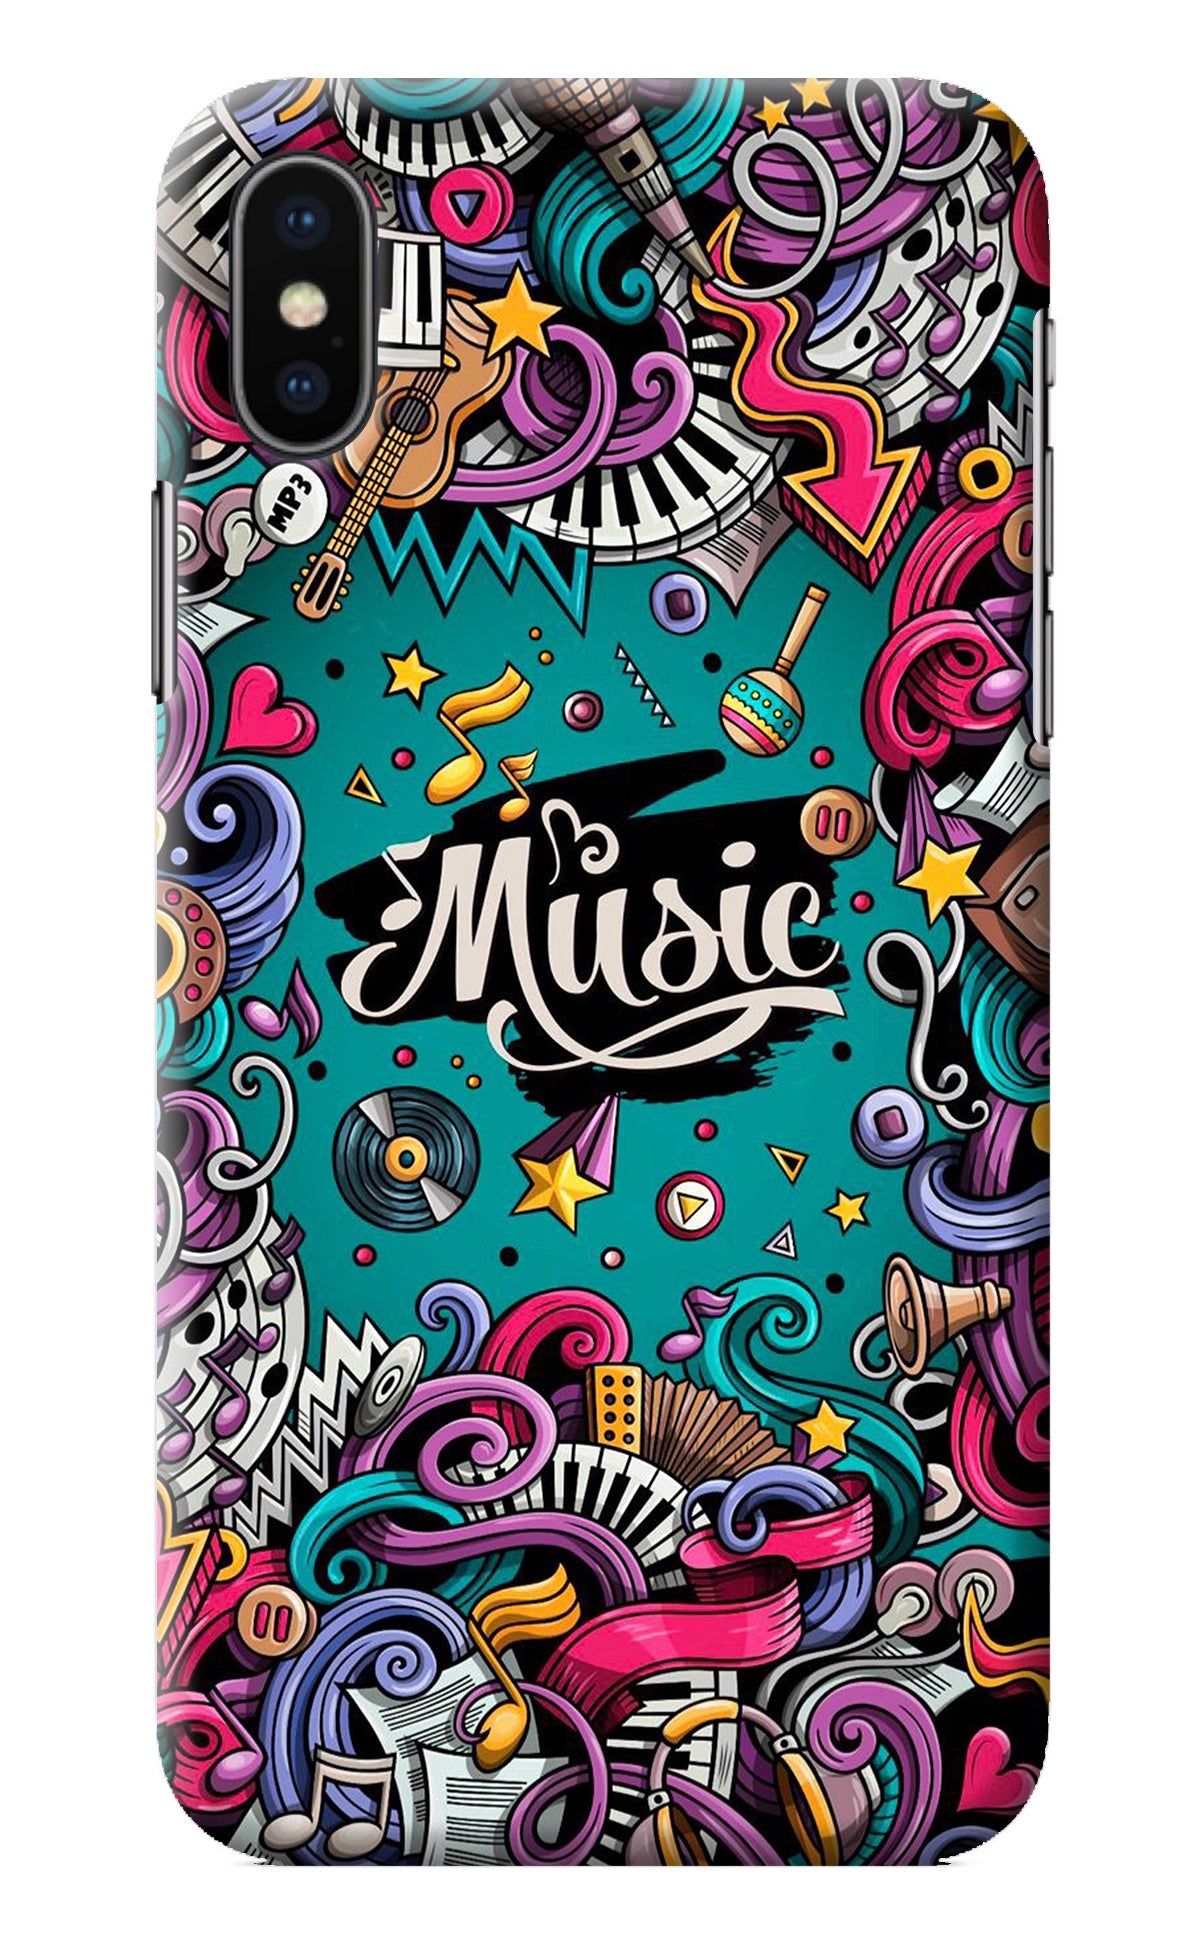 Music Graffiti iPhone X Back Cover